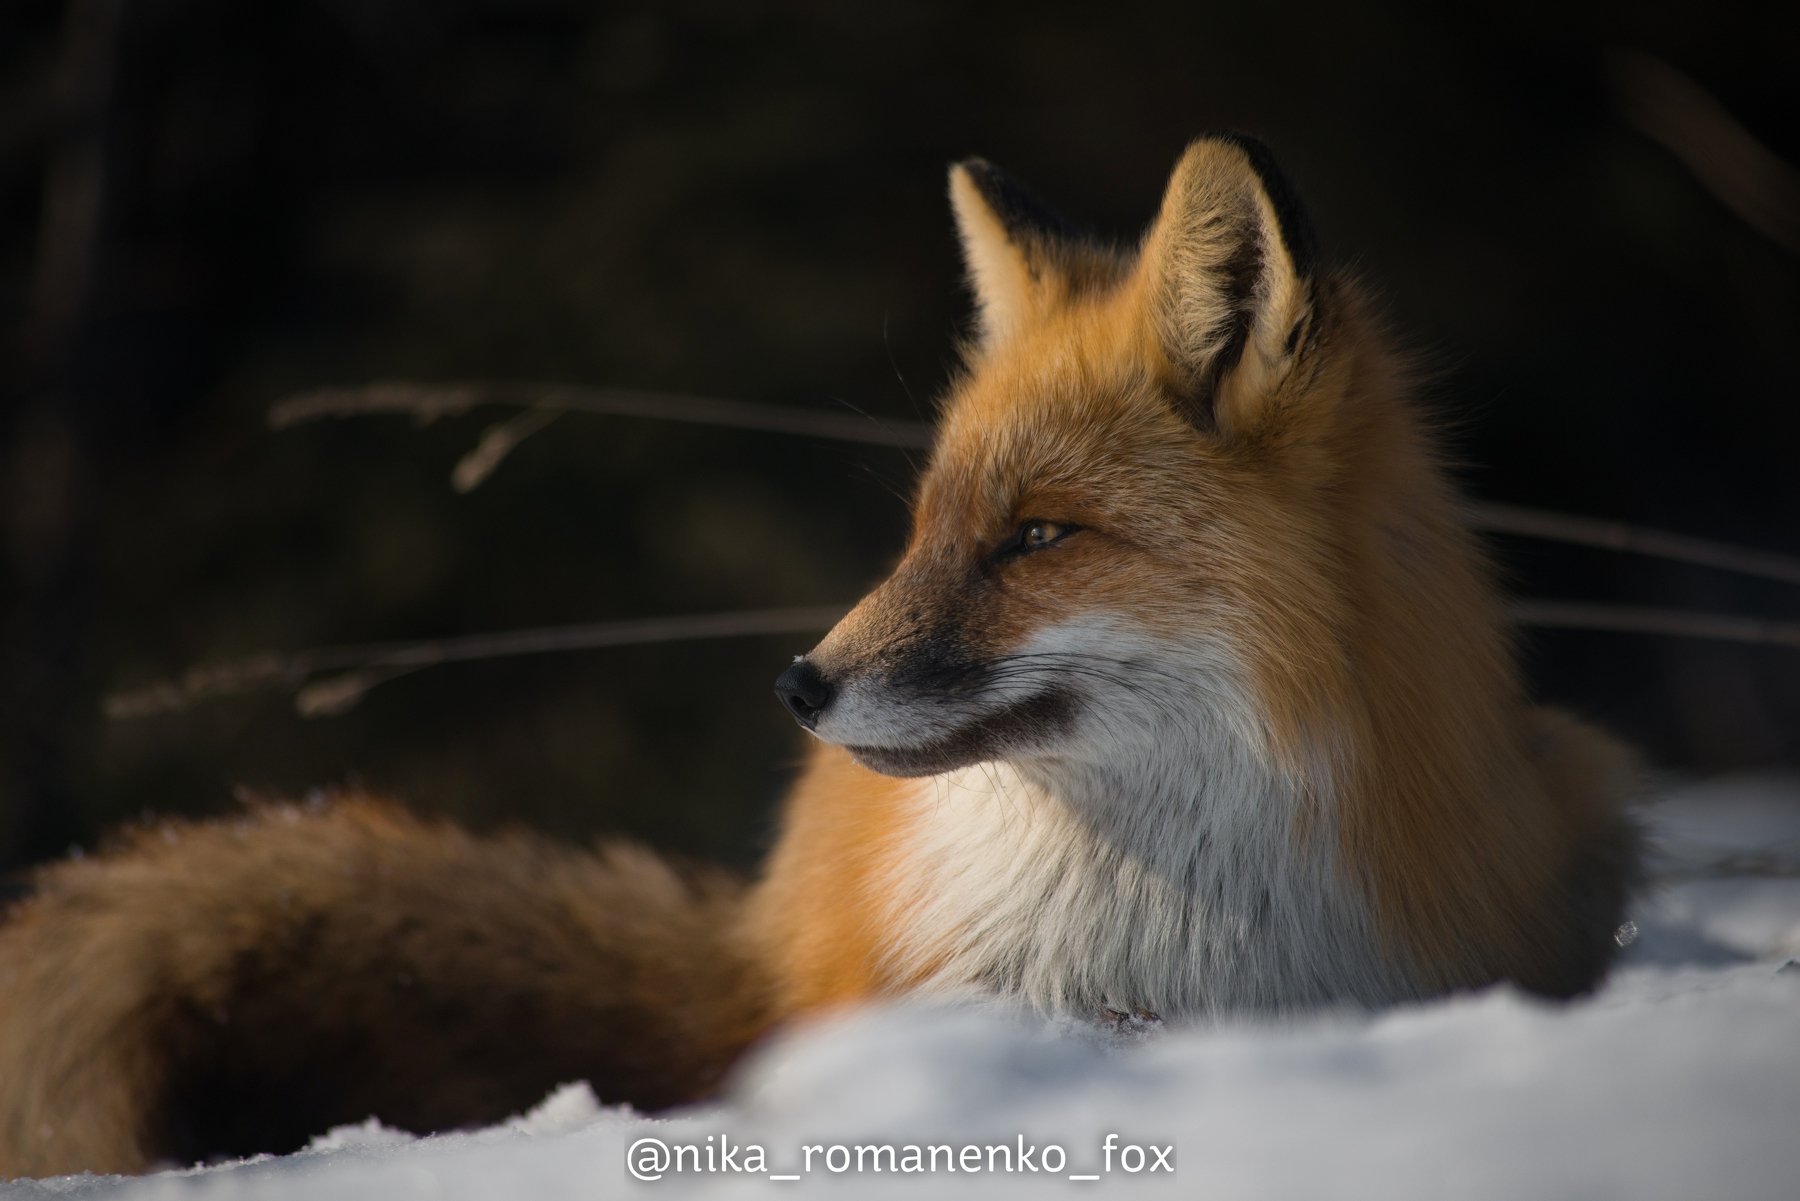 лиса, лисы, животные, снег, зима, animals, fox, foxes, animal, лис, red fox, forest, лес, Вероника Романенко